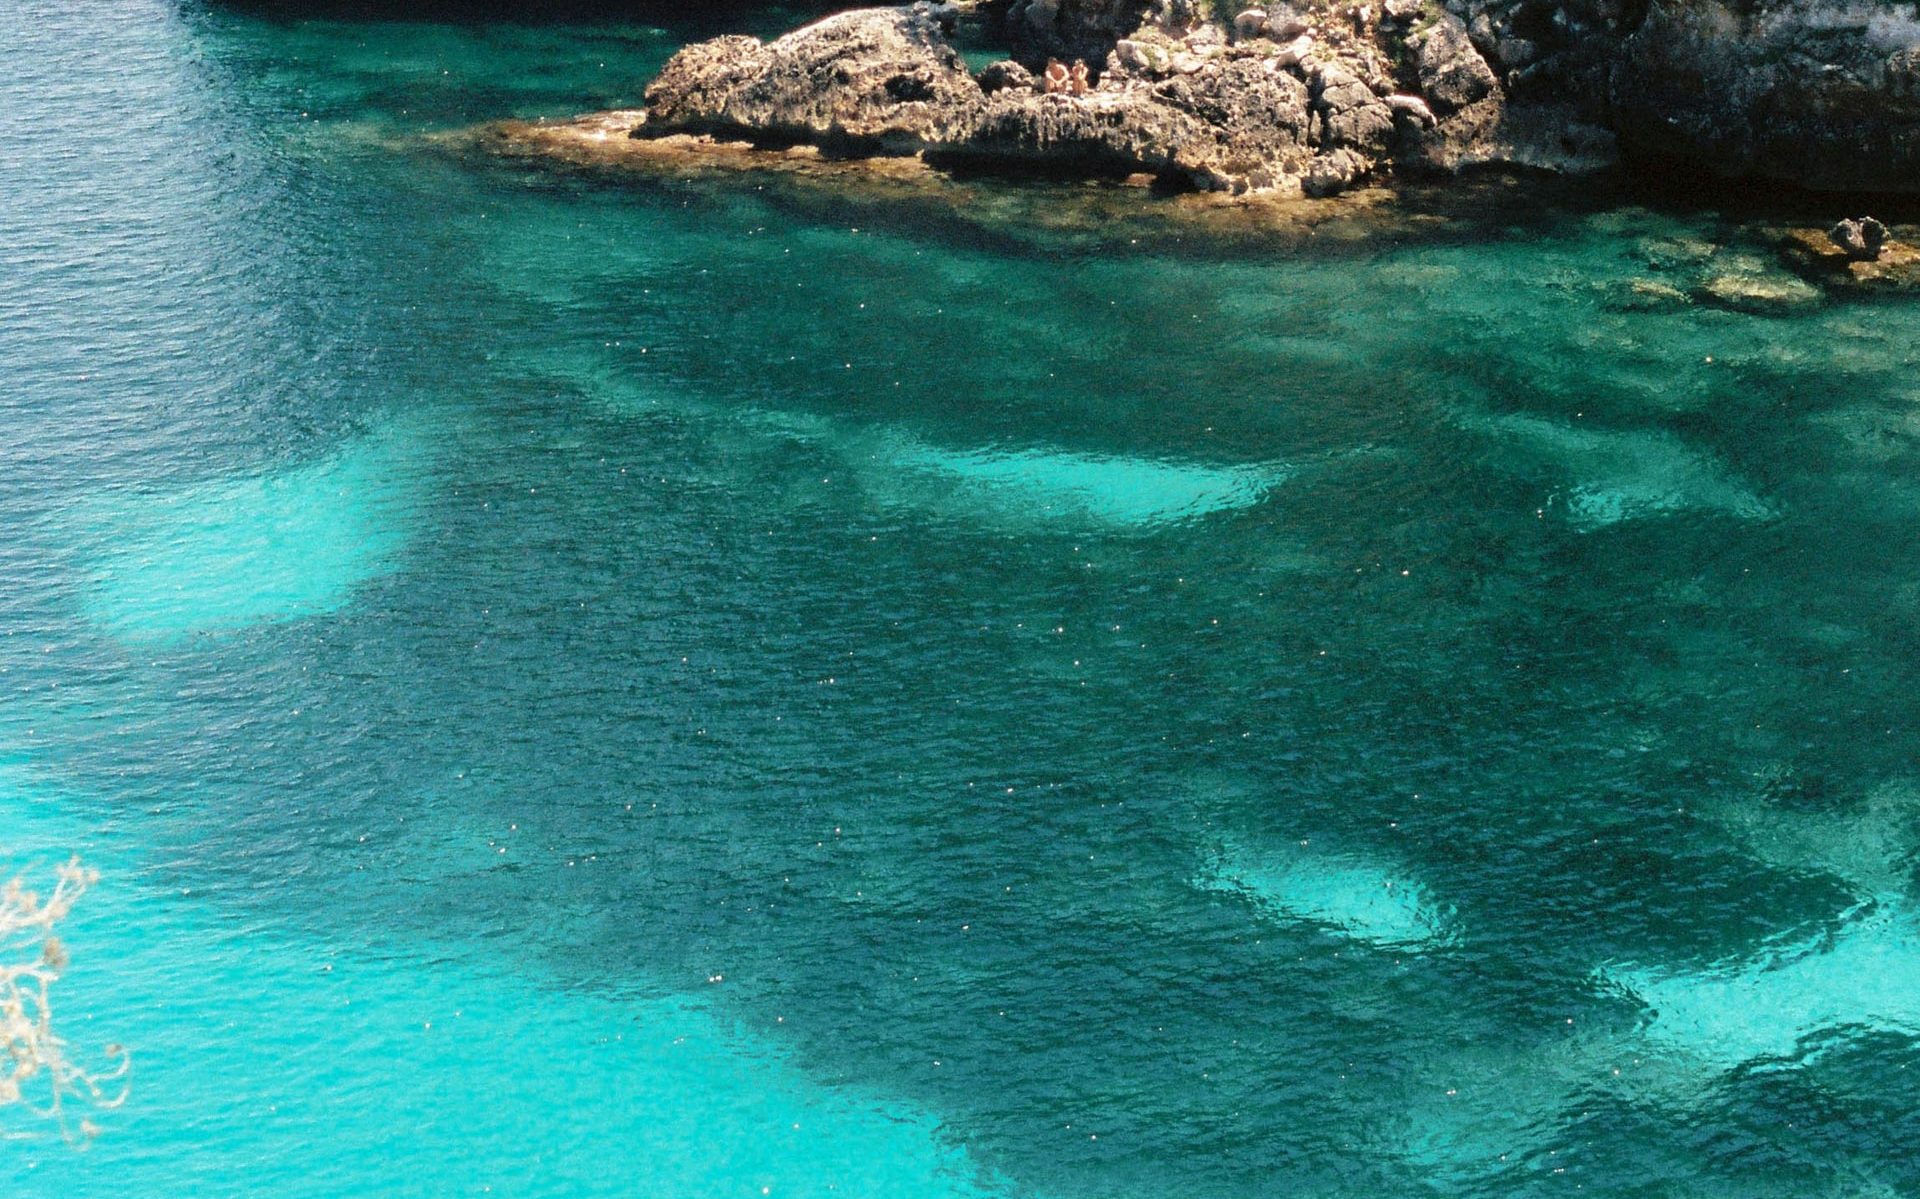 Posidonia oceánica desde la superfície en una cala mediterránea 